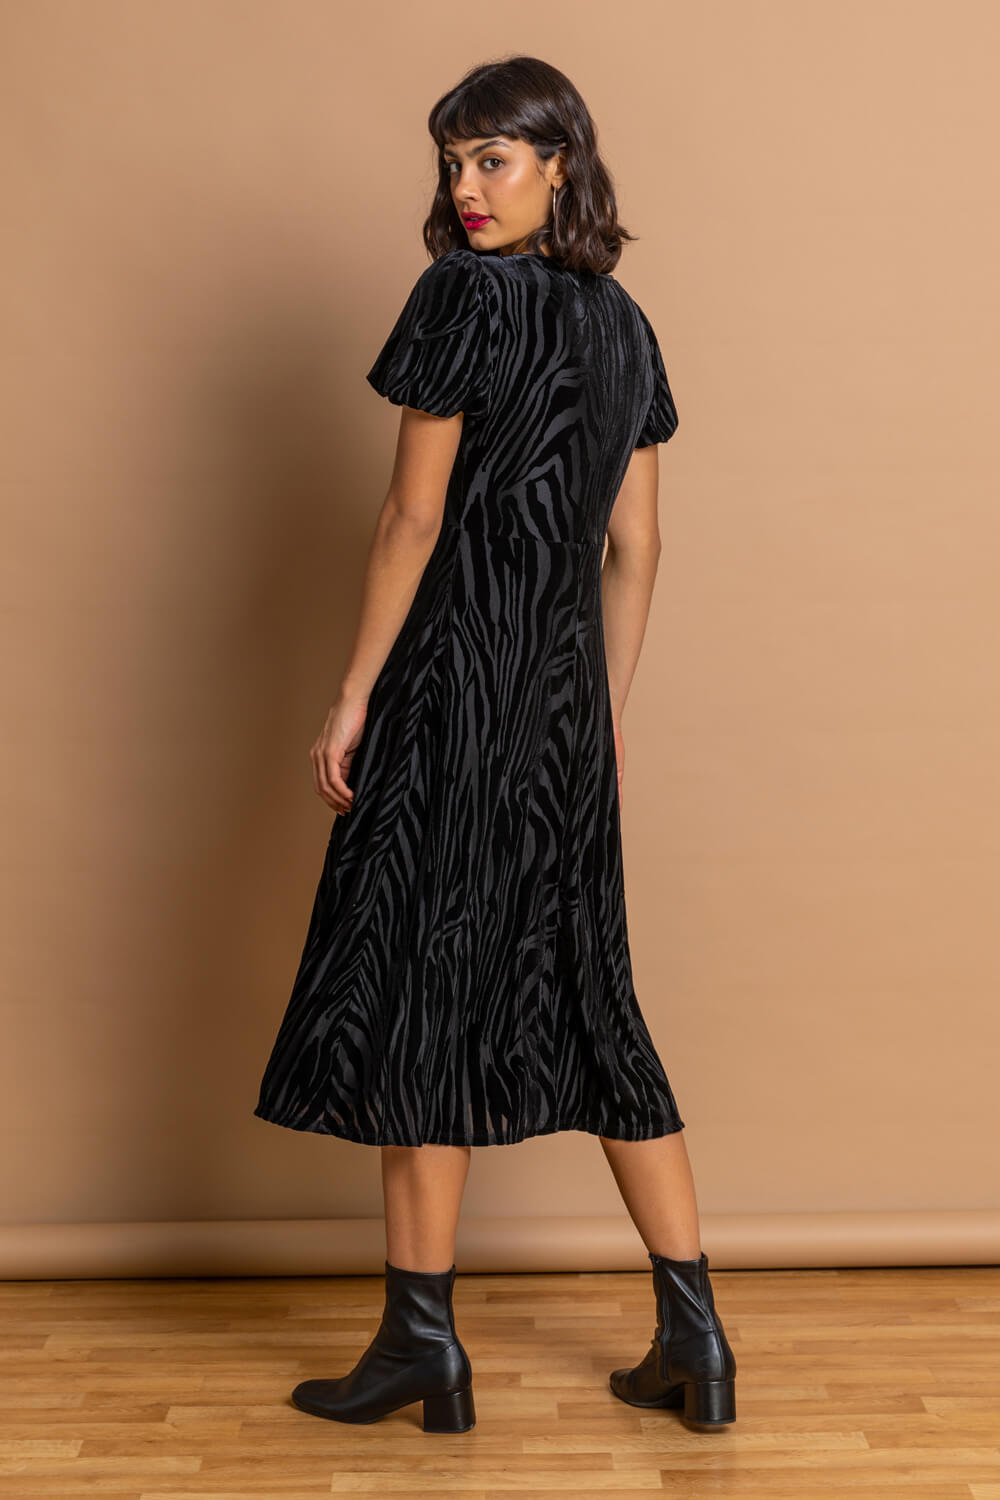 Black Animal Print Burnout Velvet Dress, Image 2 of 5